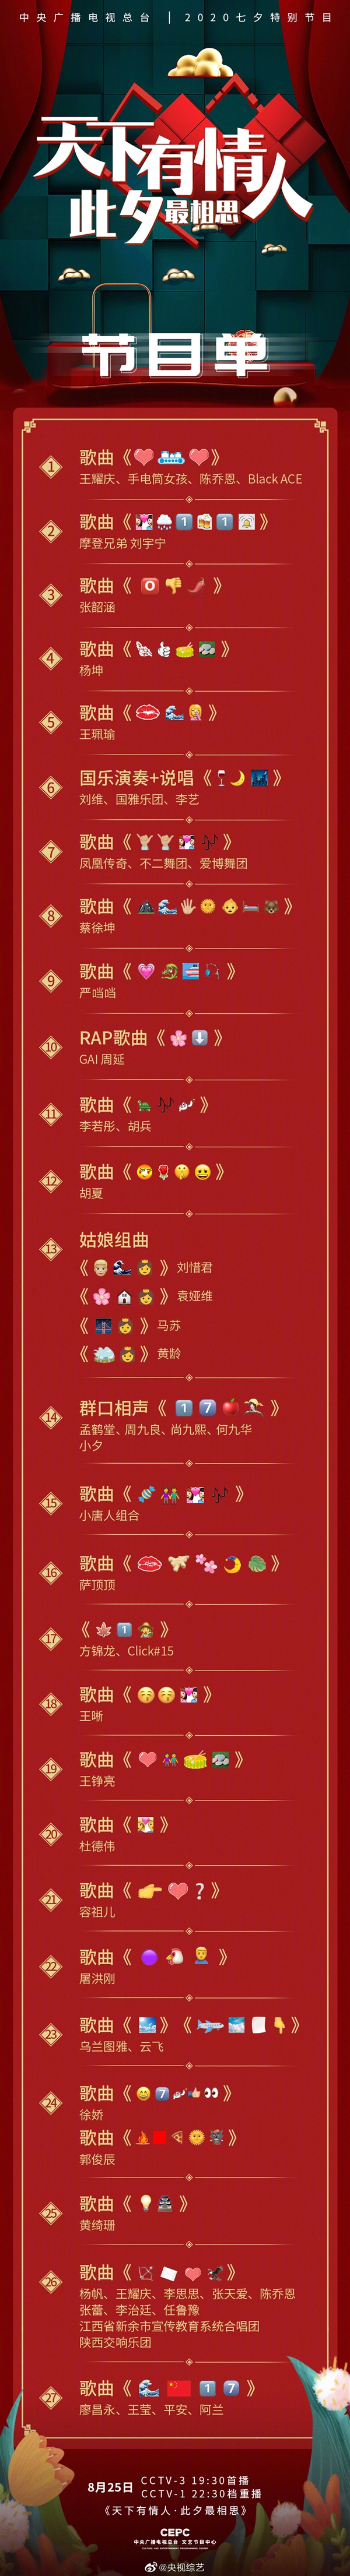 央视七夕节特别节目揭开emoji谜底 公布正式版节目单 你猜对了吗？